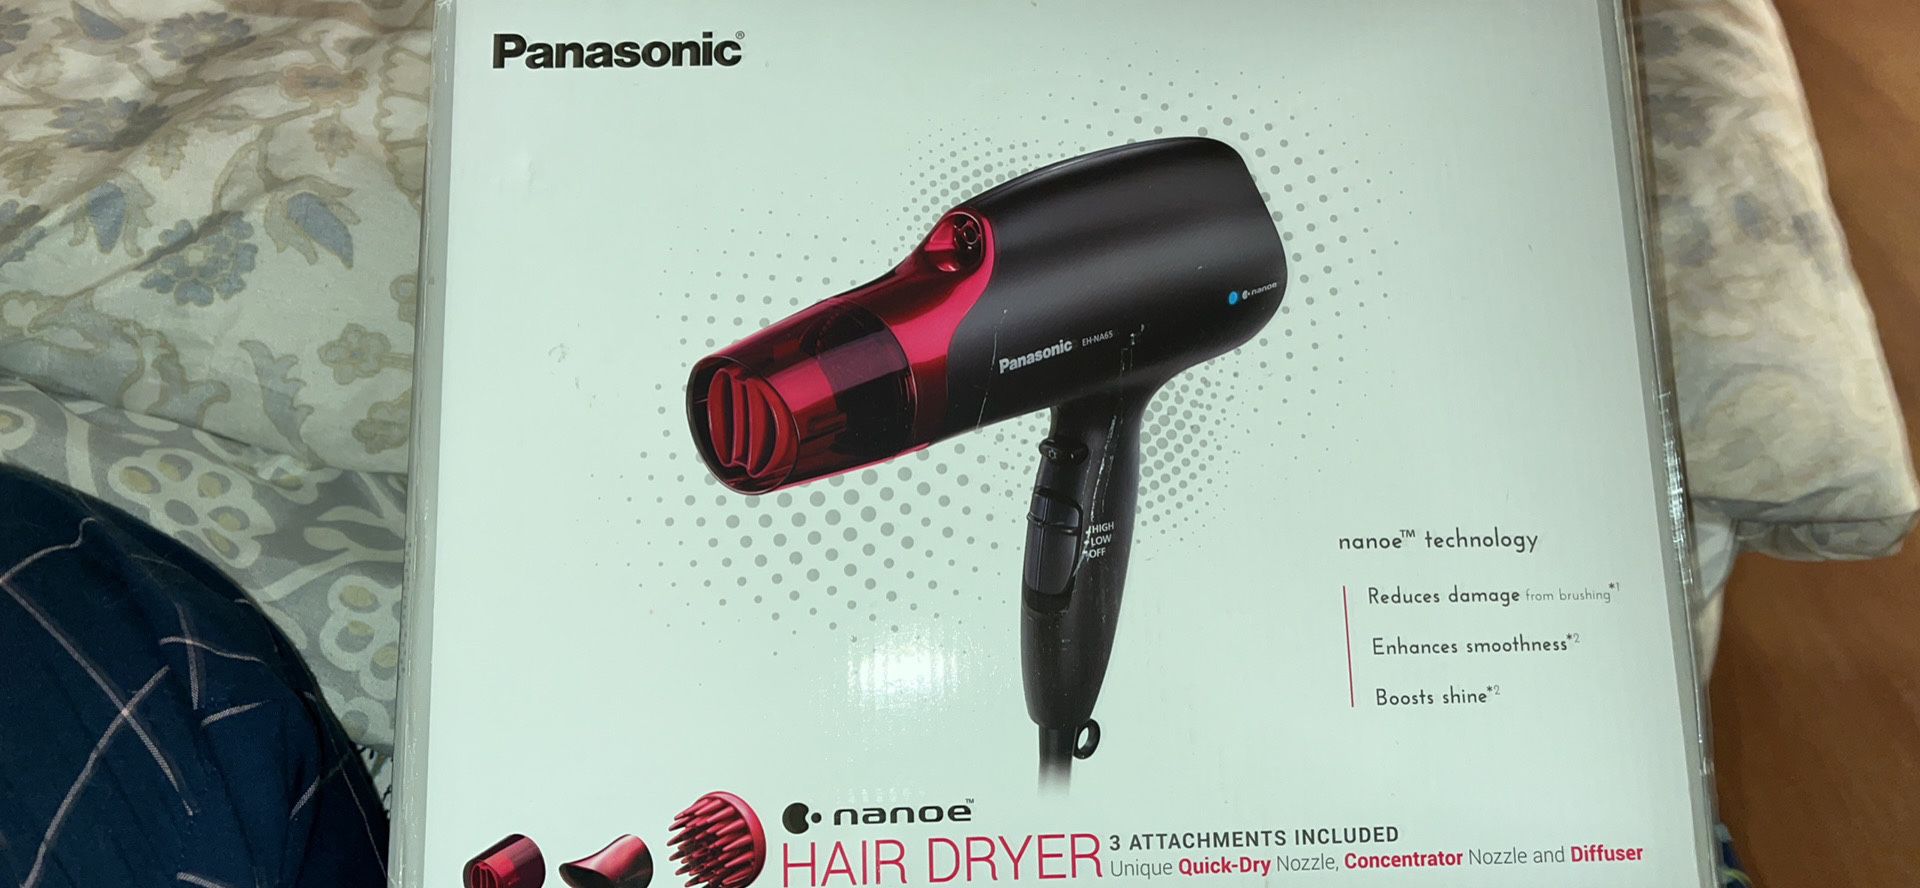 Panasonic nanoe Hair Dryer Deal